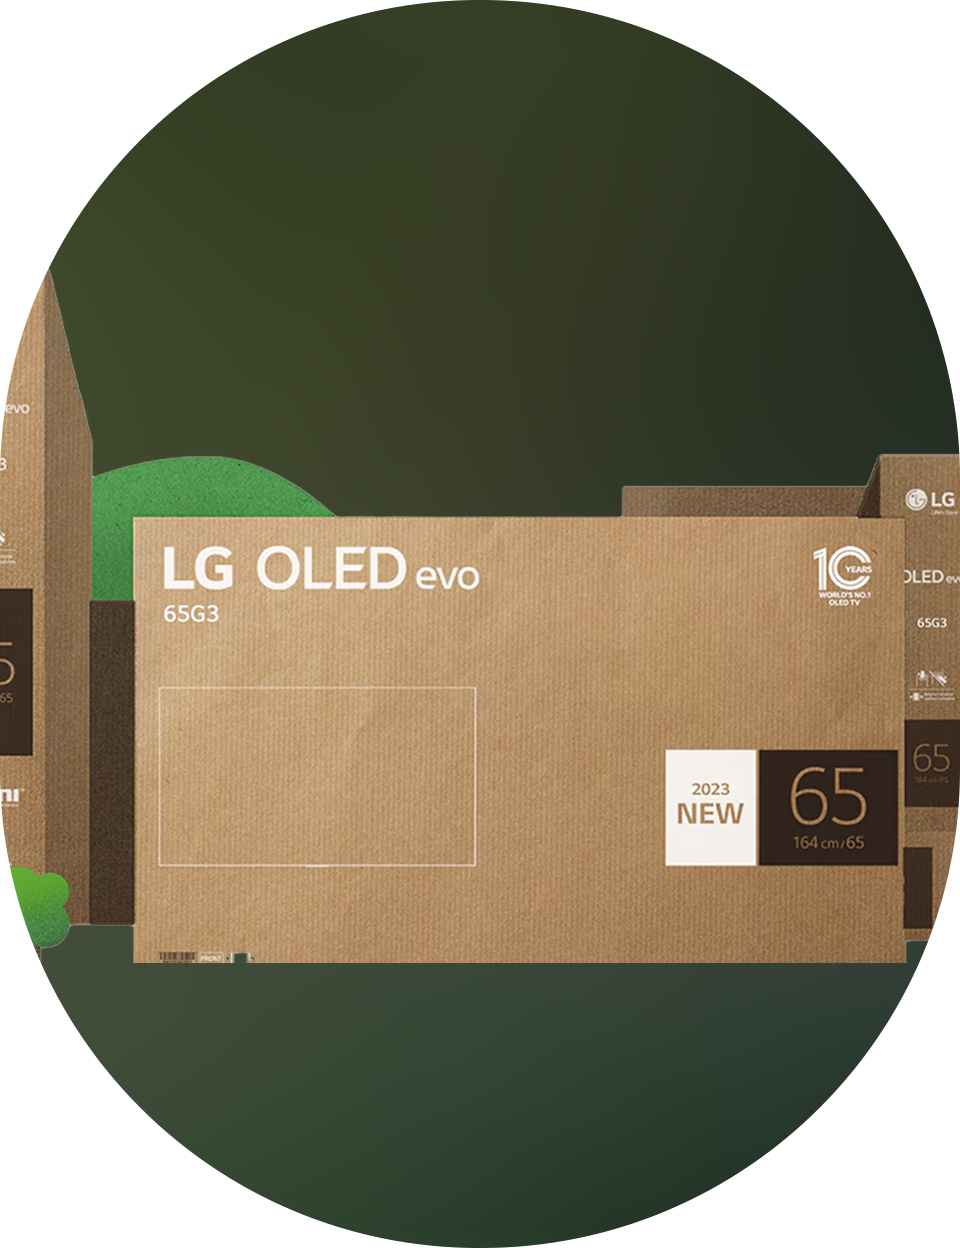 LG OLED evo TV-Serie recyclebare Kartons 